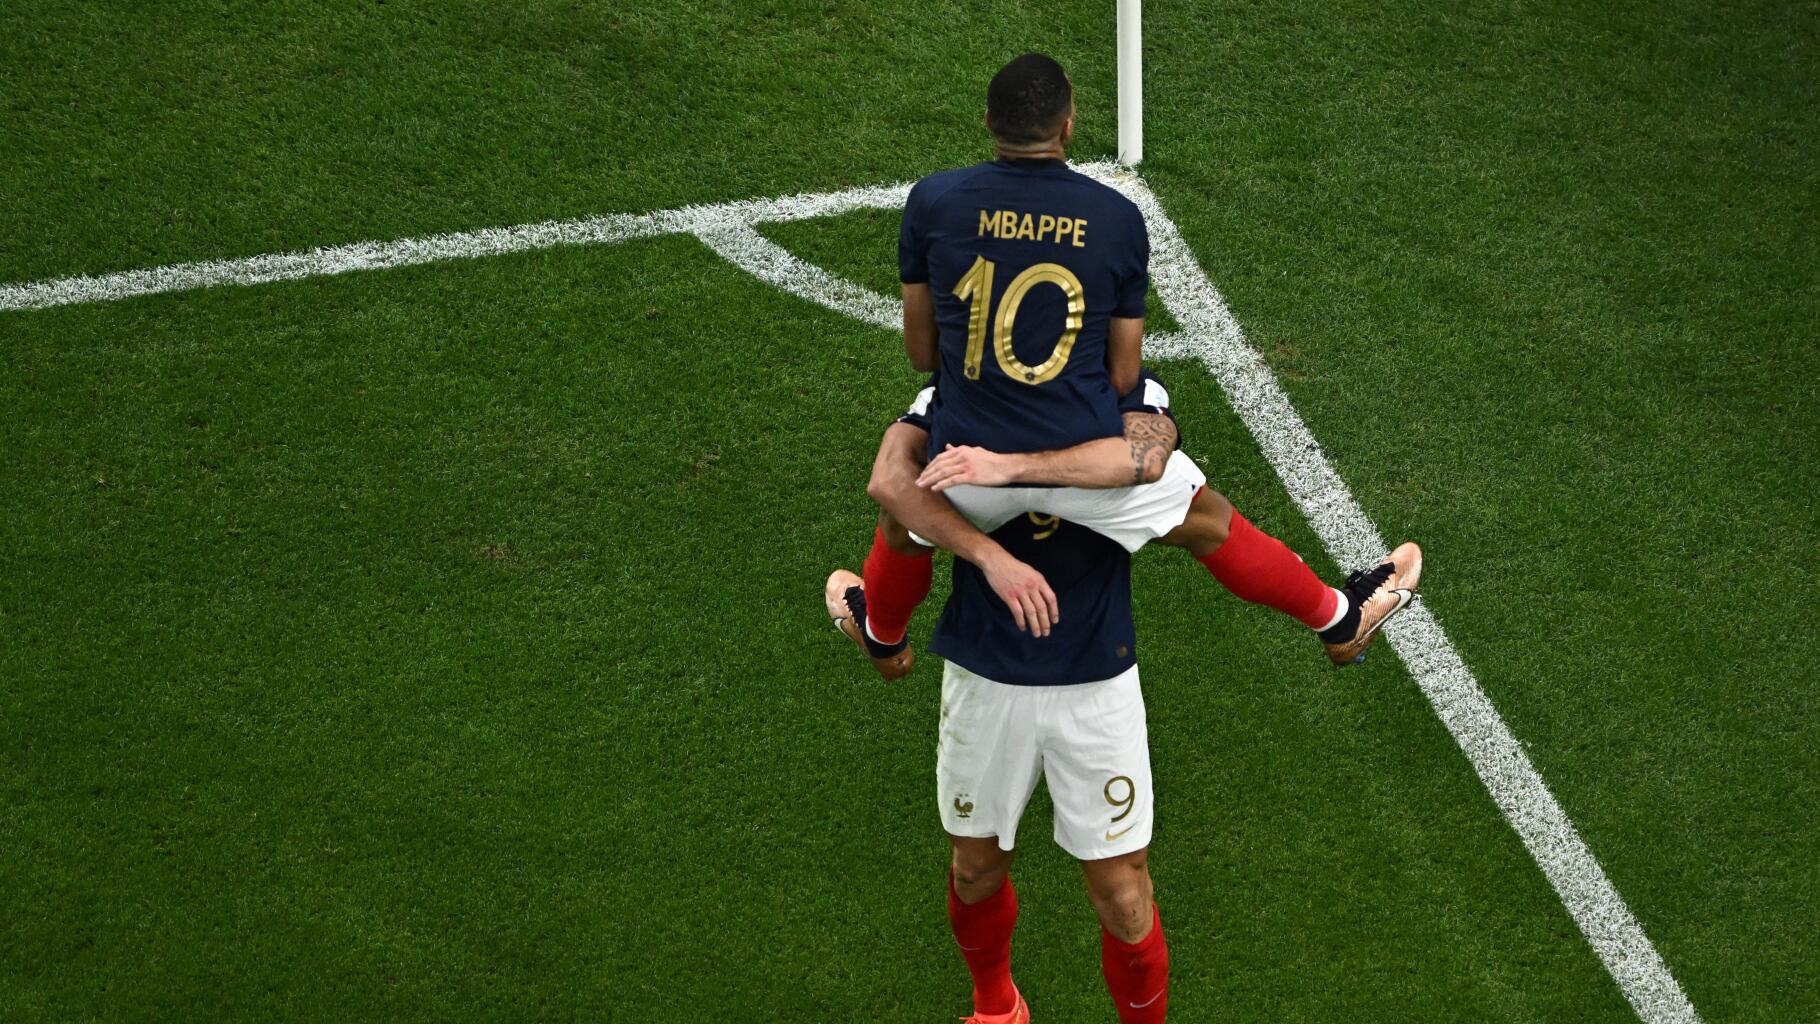 Cette photo de Mbappé dans les bras de Giroud fait fondre tout le monde